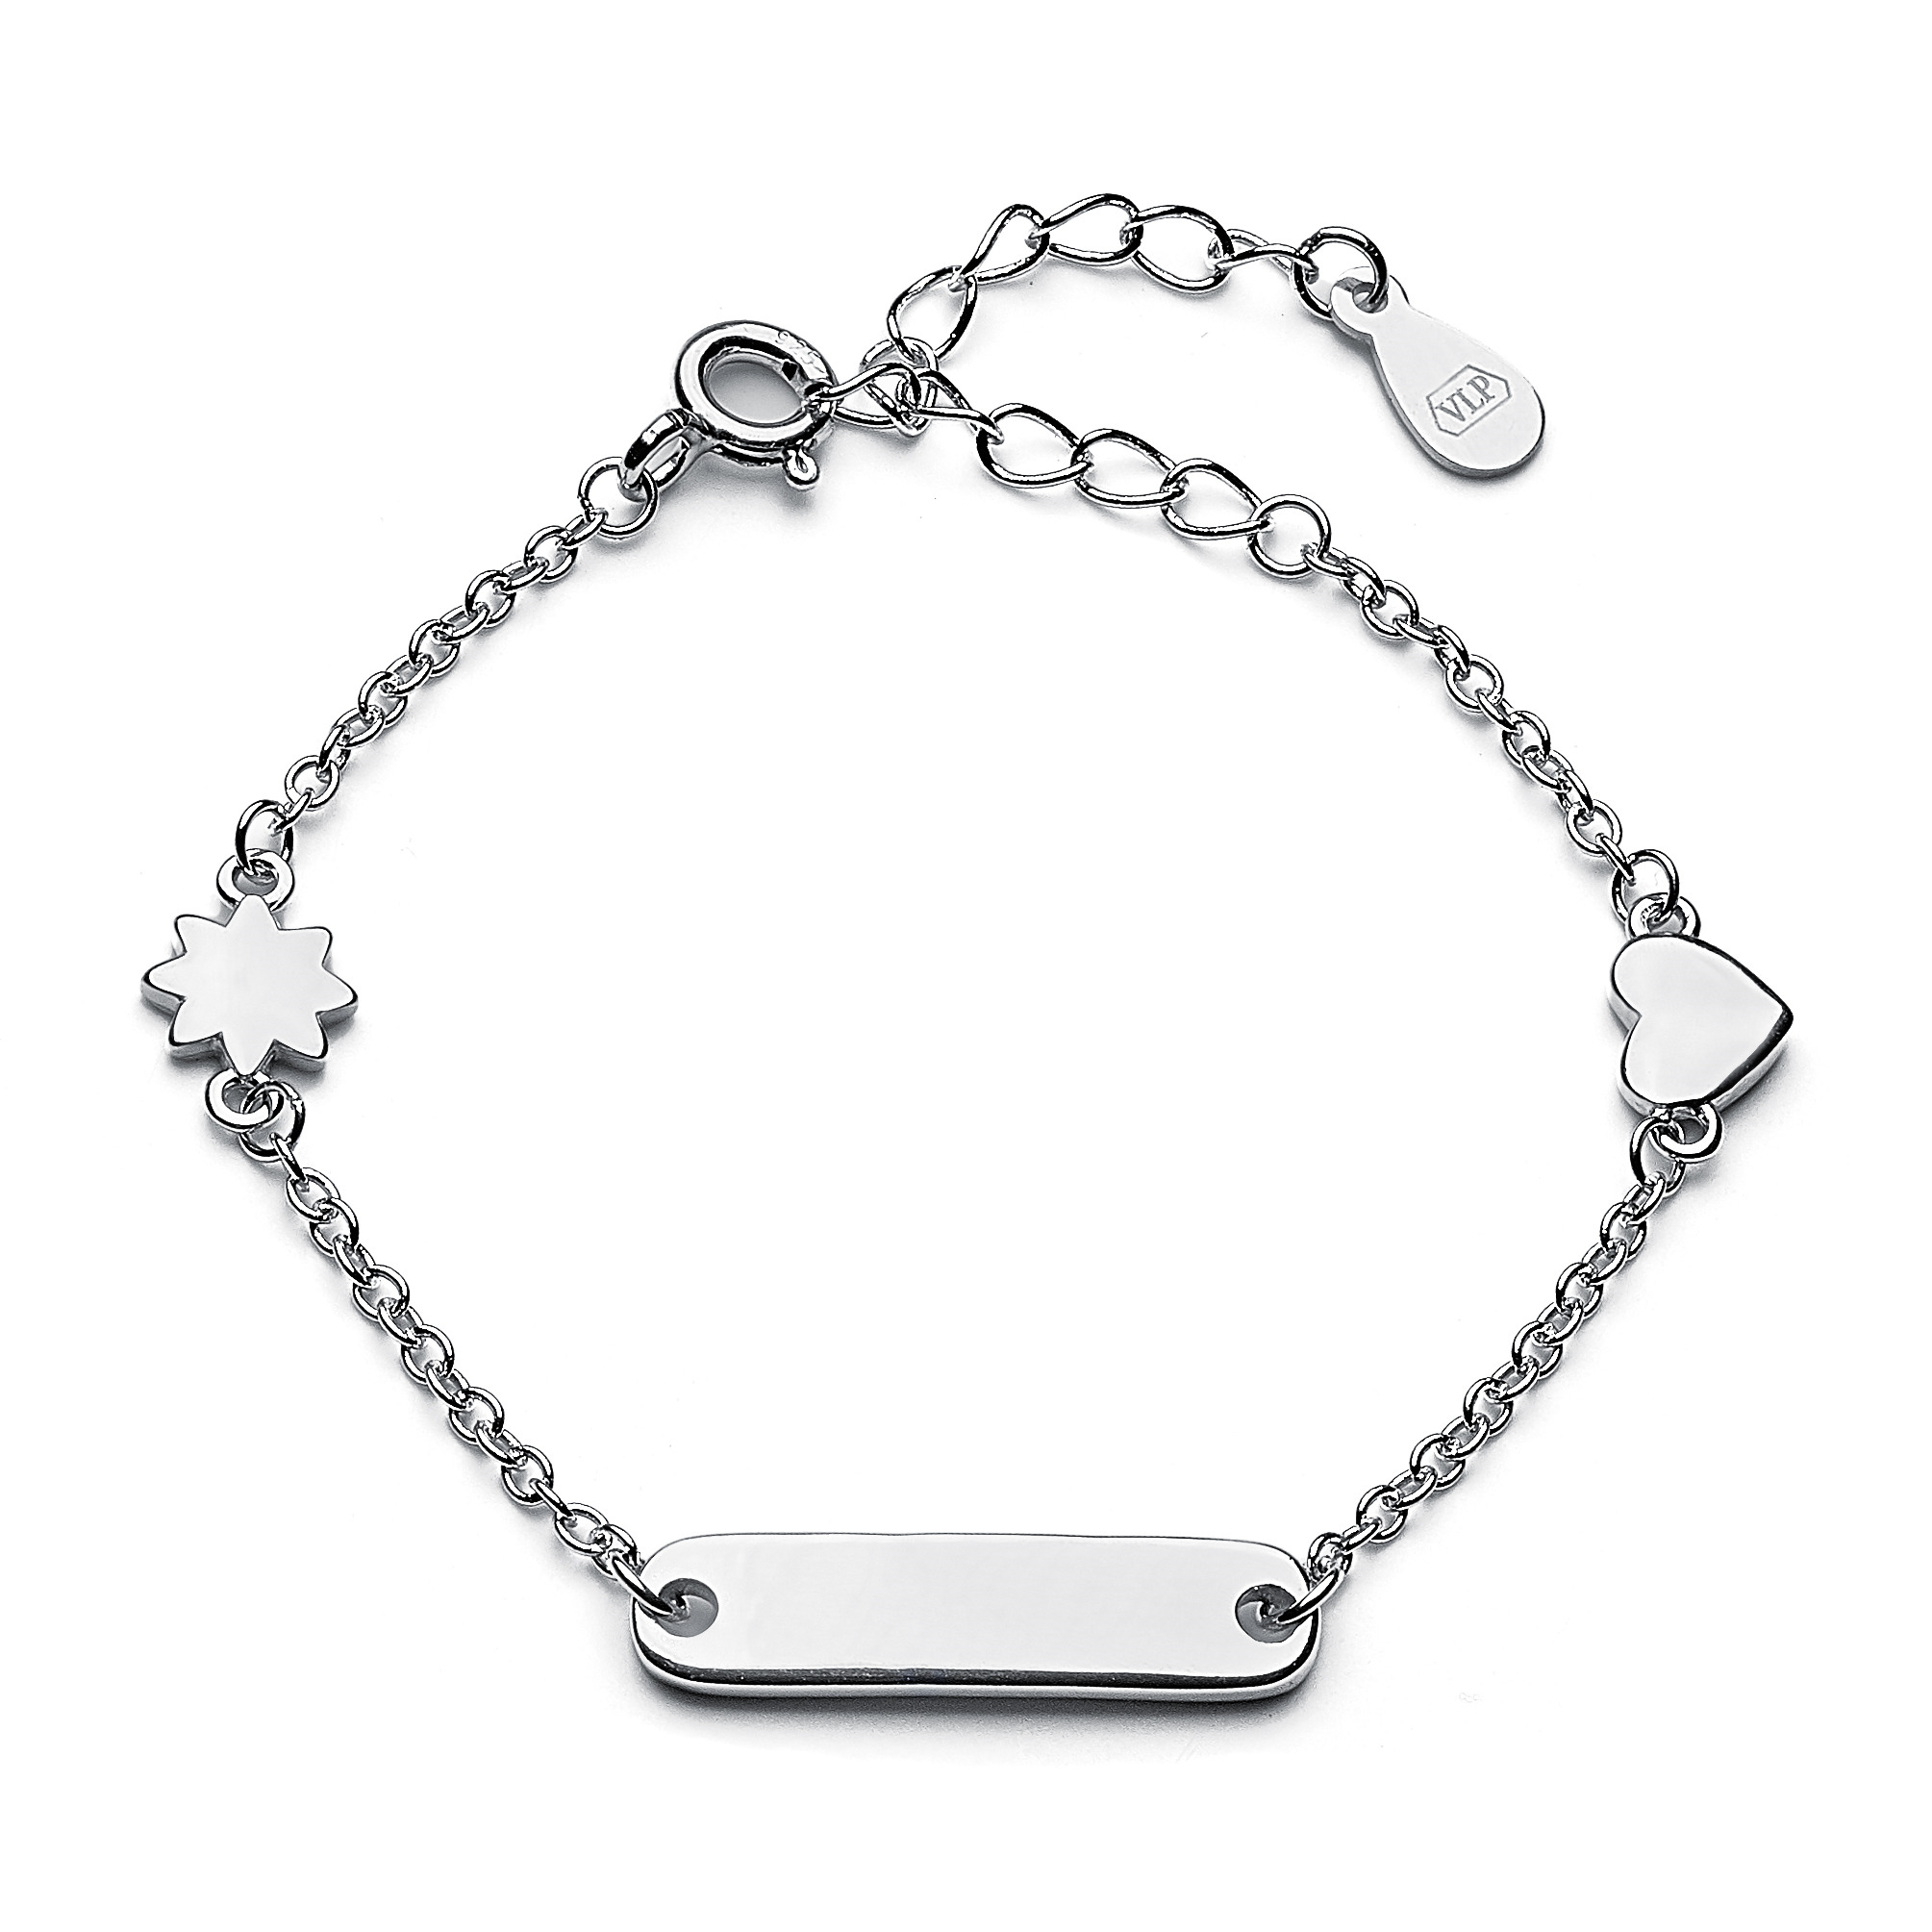 Šperky4U Dětský stříbrný náramek s destičkou, možnost rytiny, délka 12+3 cm Náramek: bez rytiny